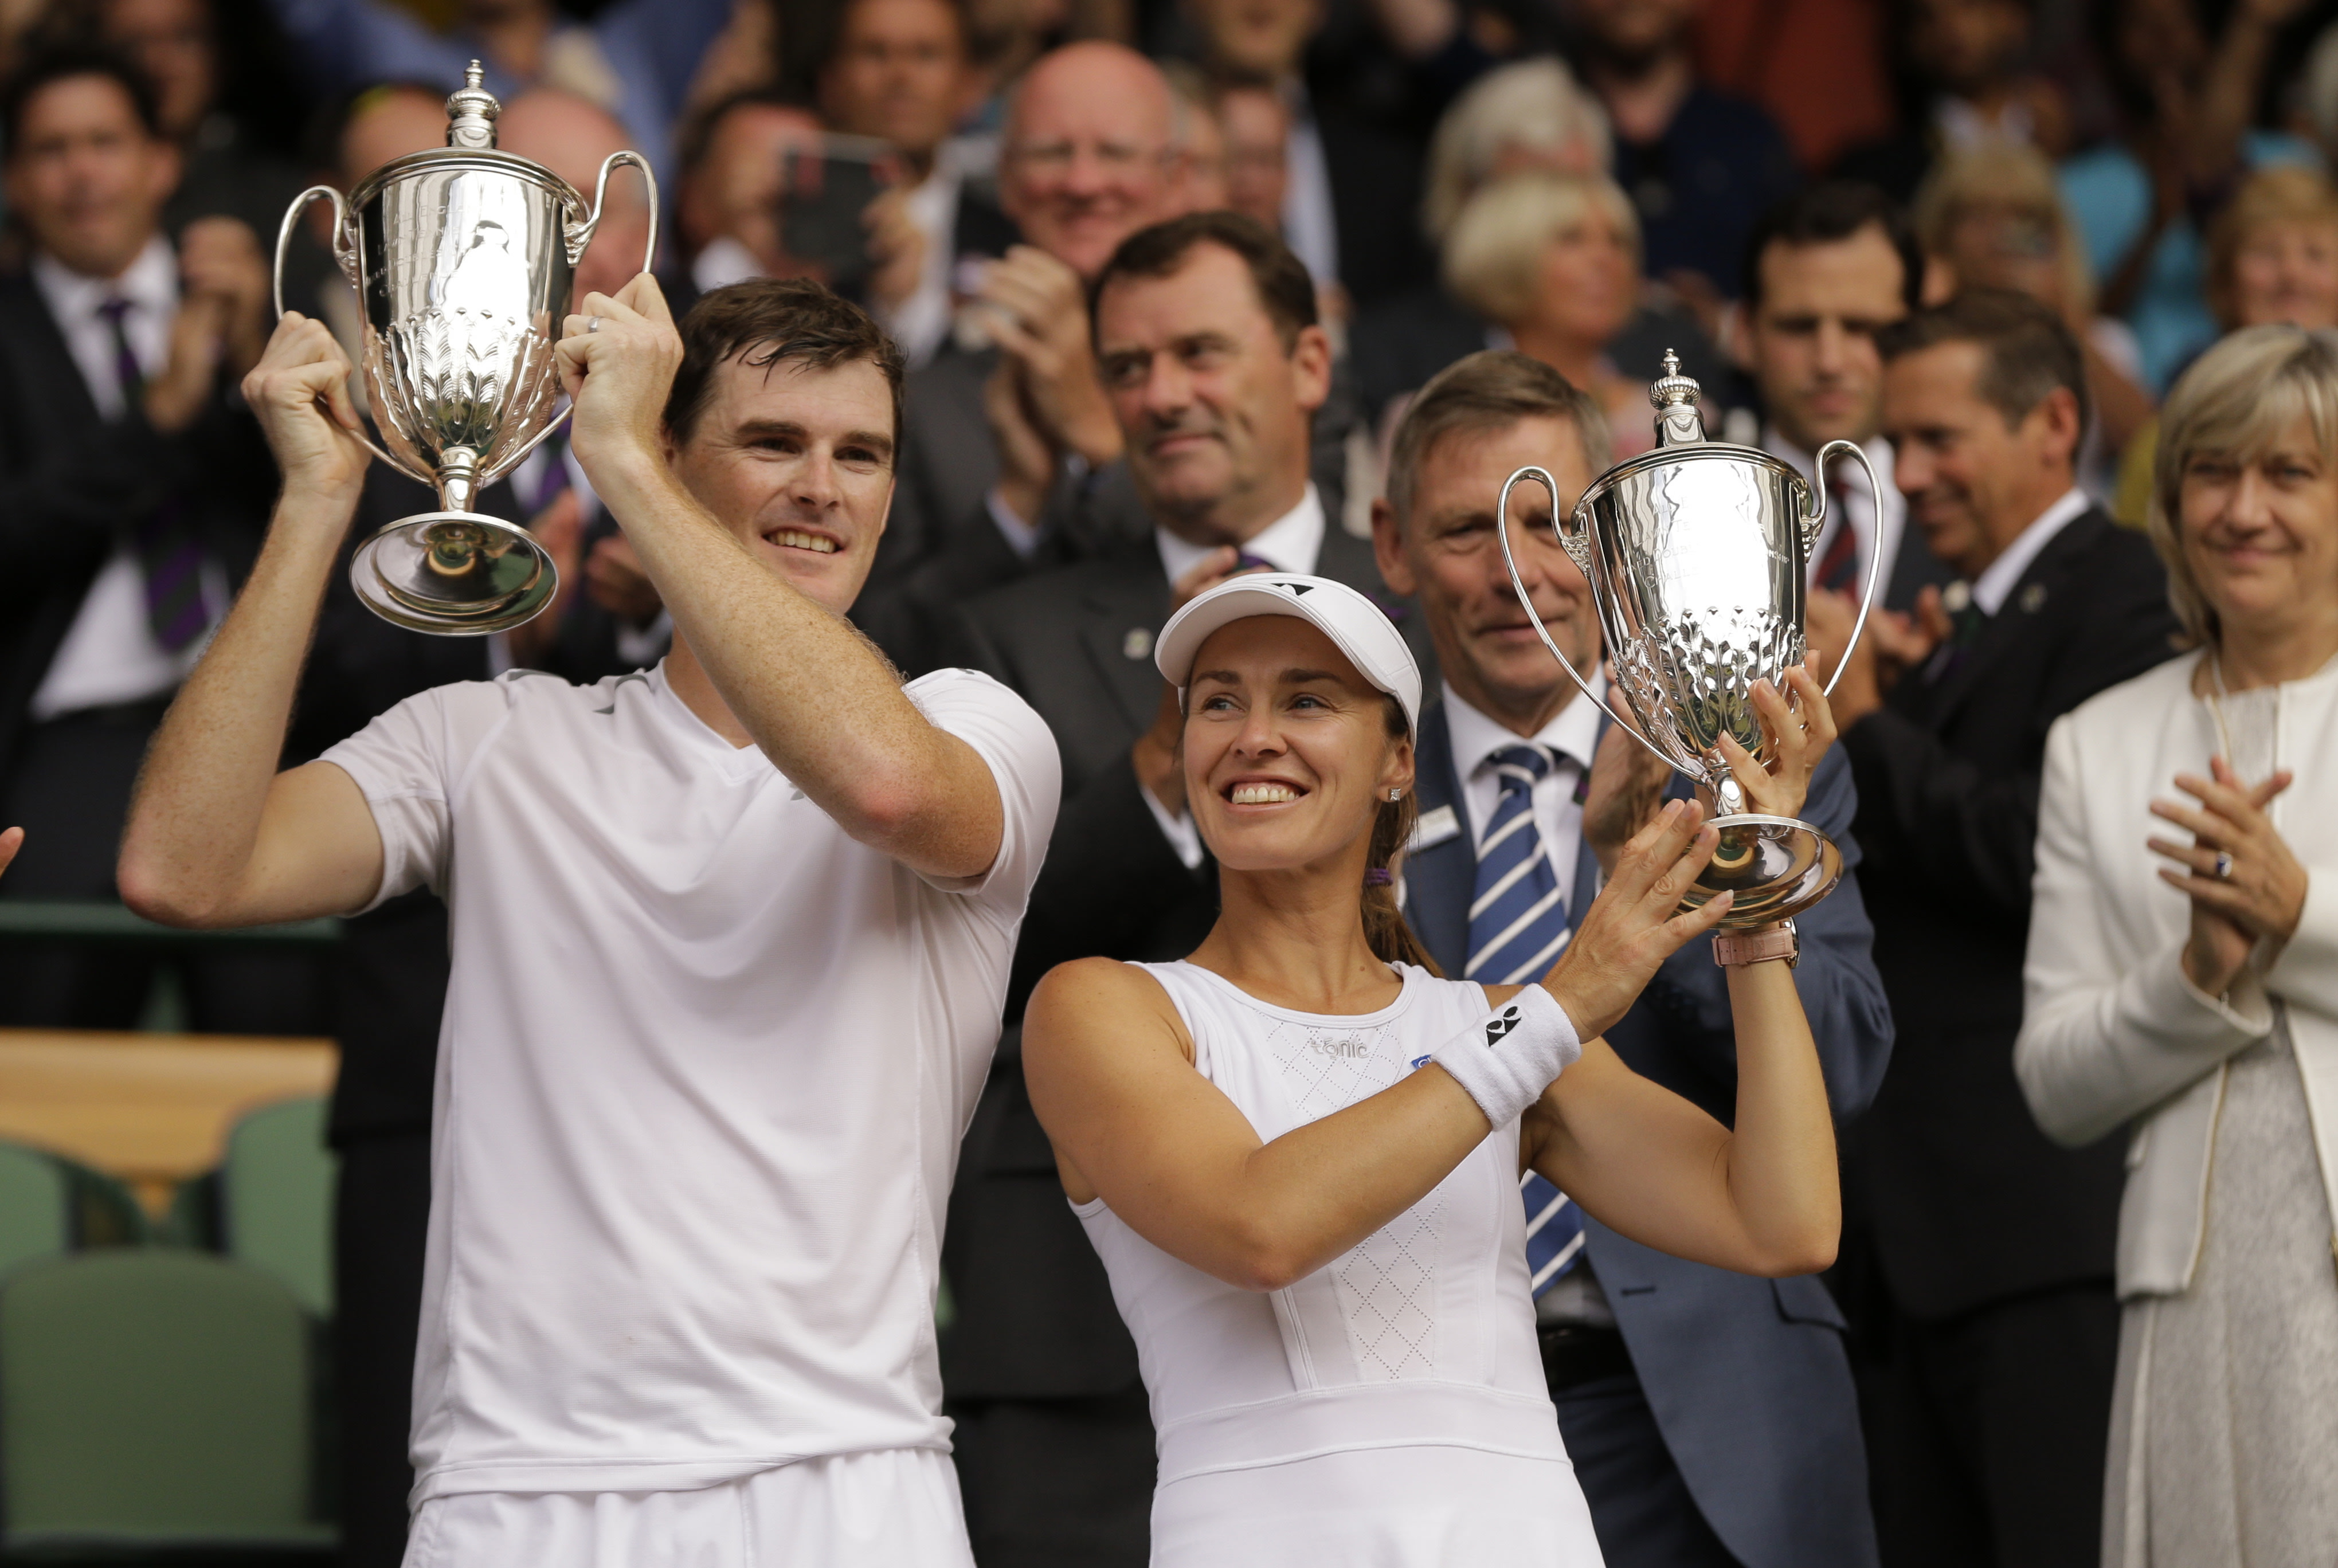 Martina Hingis And Jamie Murray Win Mixed Doubles Title At Wimbledon